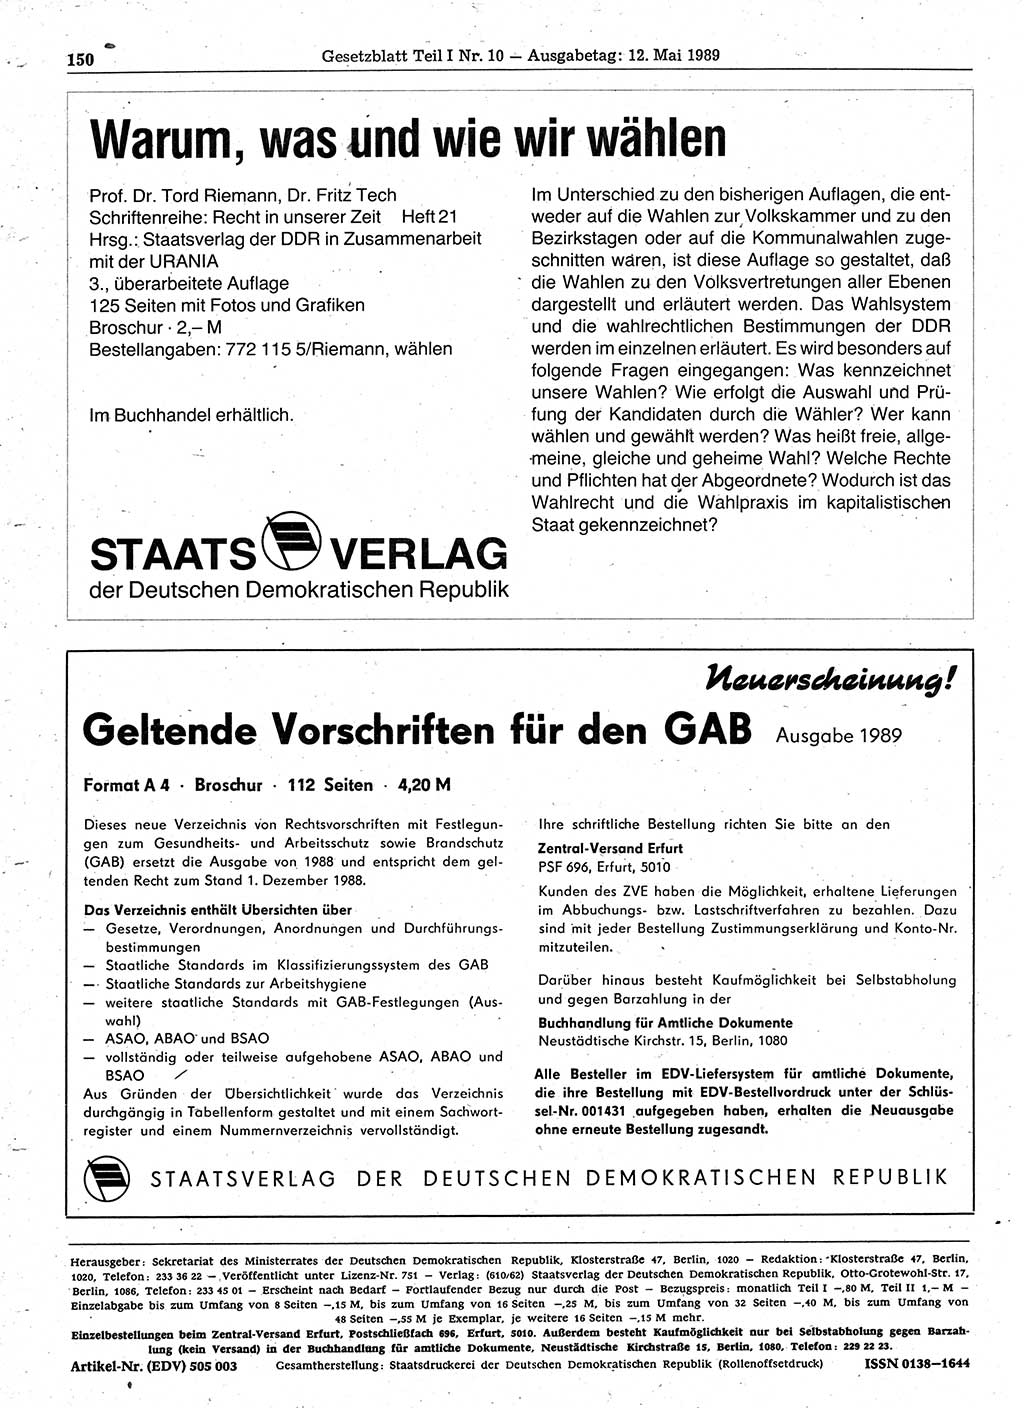 Gesetzblatt (GBl.) der Deutschen Demokratischen Republik (DDR) Teil Ⅰ 1989, Seite 150 (GBl. DDR Ⅰ 1989, S. 150)